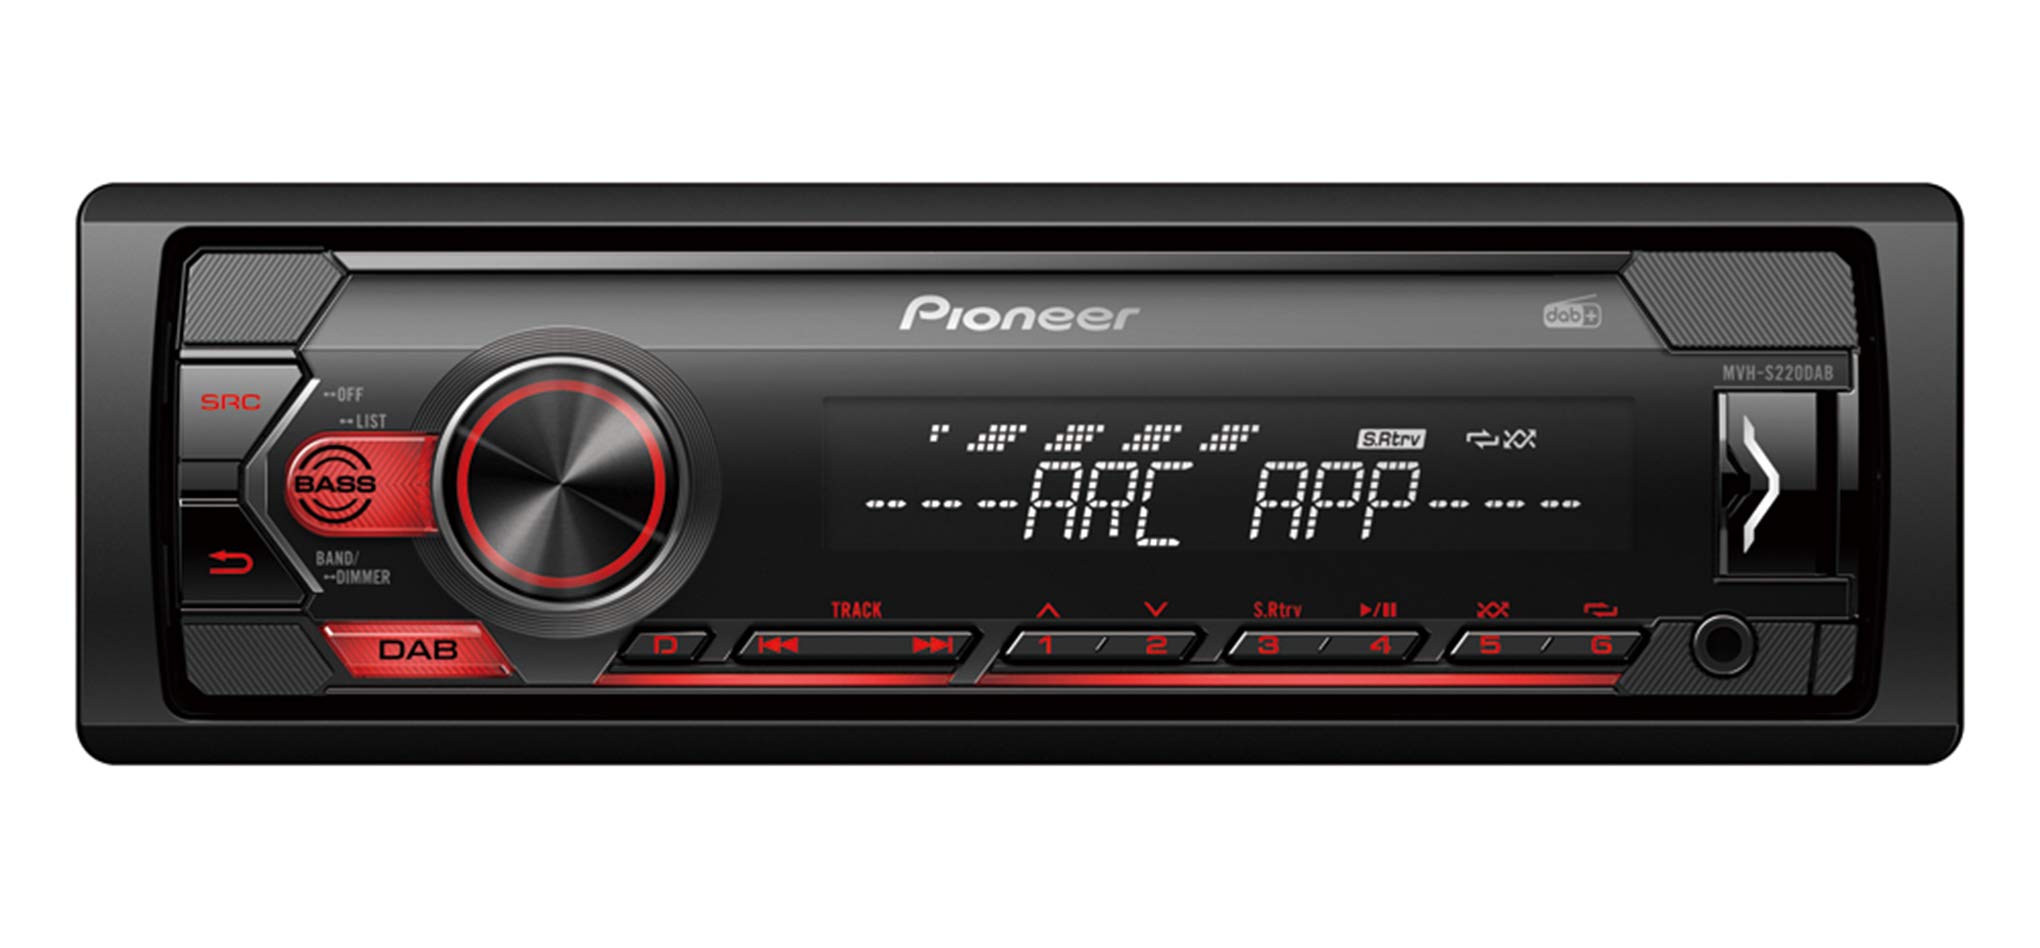 Pioneer MVH-S220DAB, 1DIN Autoradio mit RDS und DAB+, rot, USB für MP3, WMA, WAV, FLAC, AUX-Eingang, Android-Unterstützung, iPhone-Steuerung, ARC App